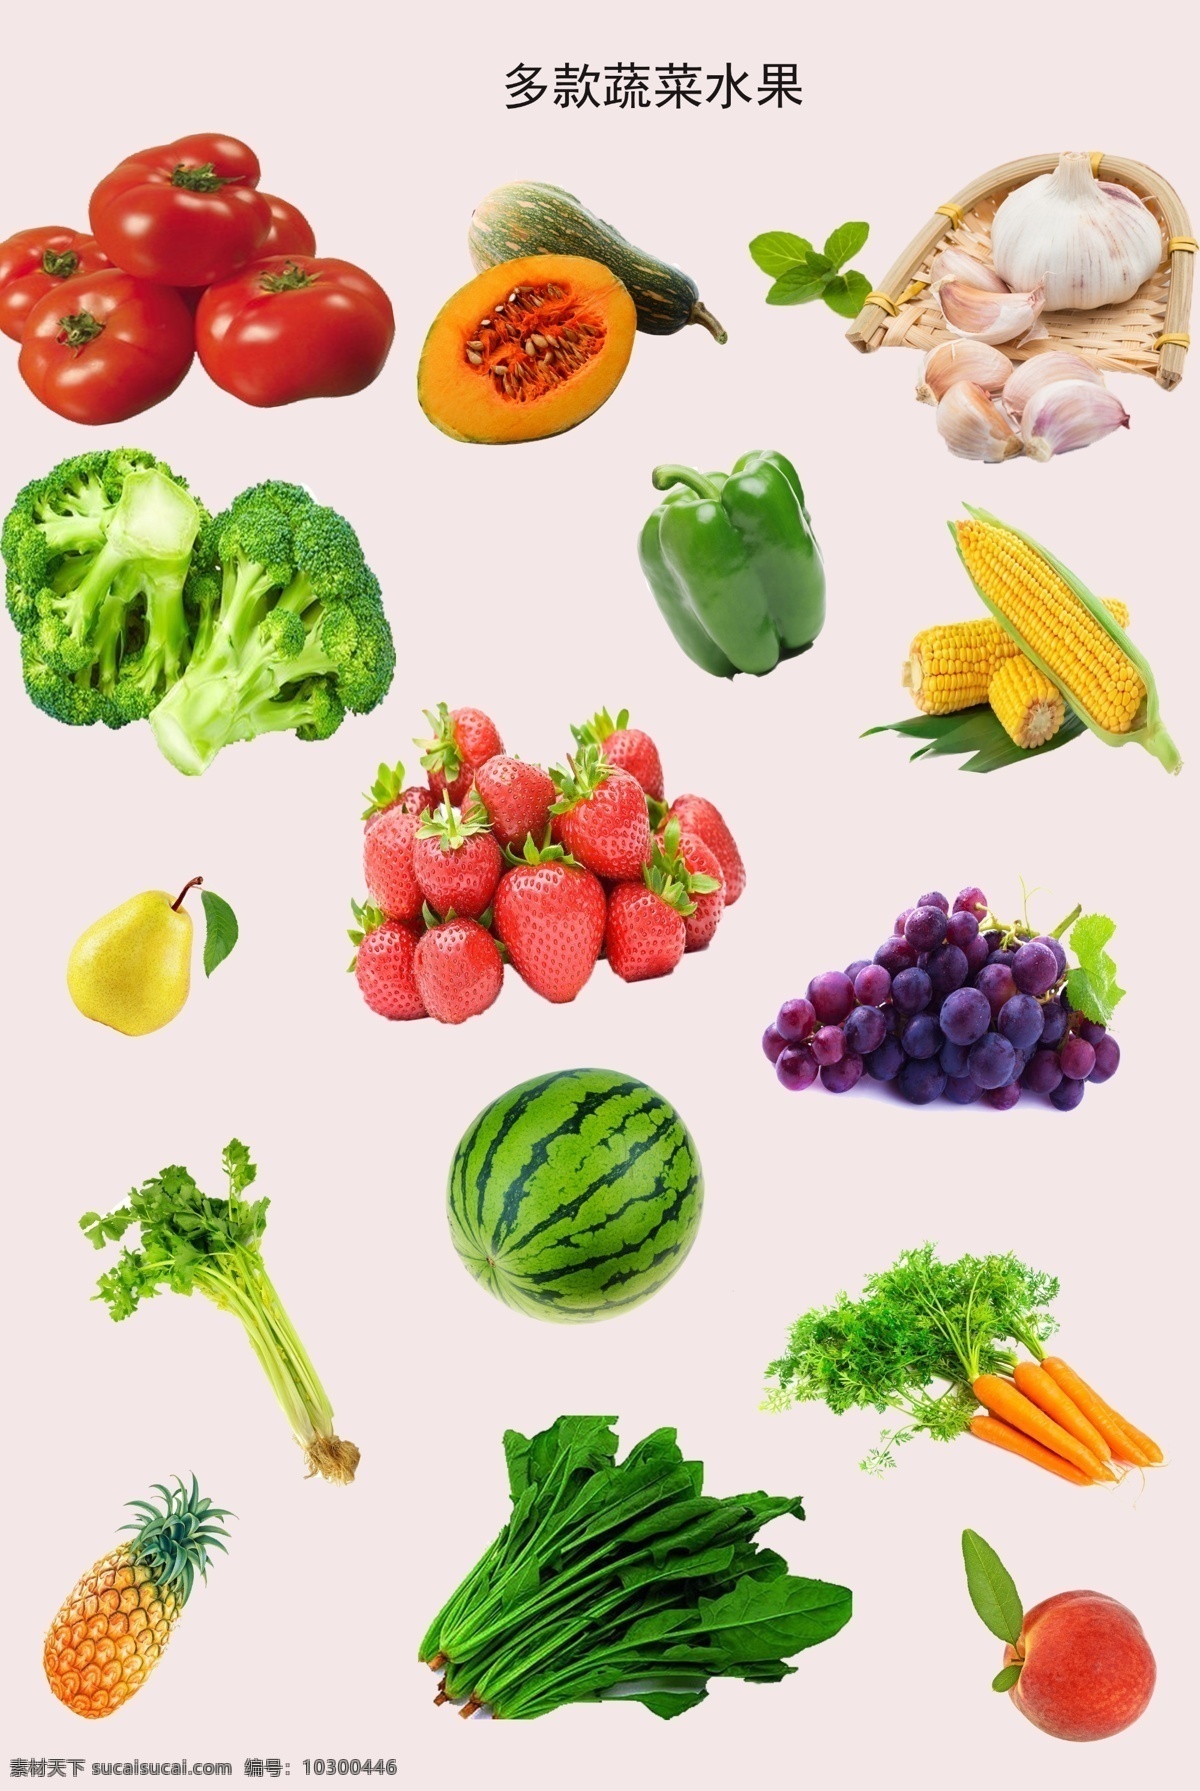 多款蔬菜水果 蔬菜水果素材 水果蔬菜素材 分辨率254 分层